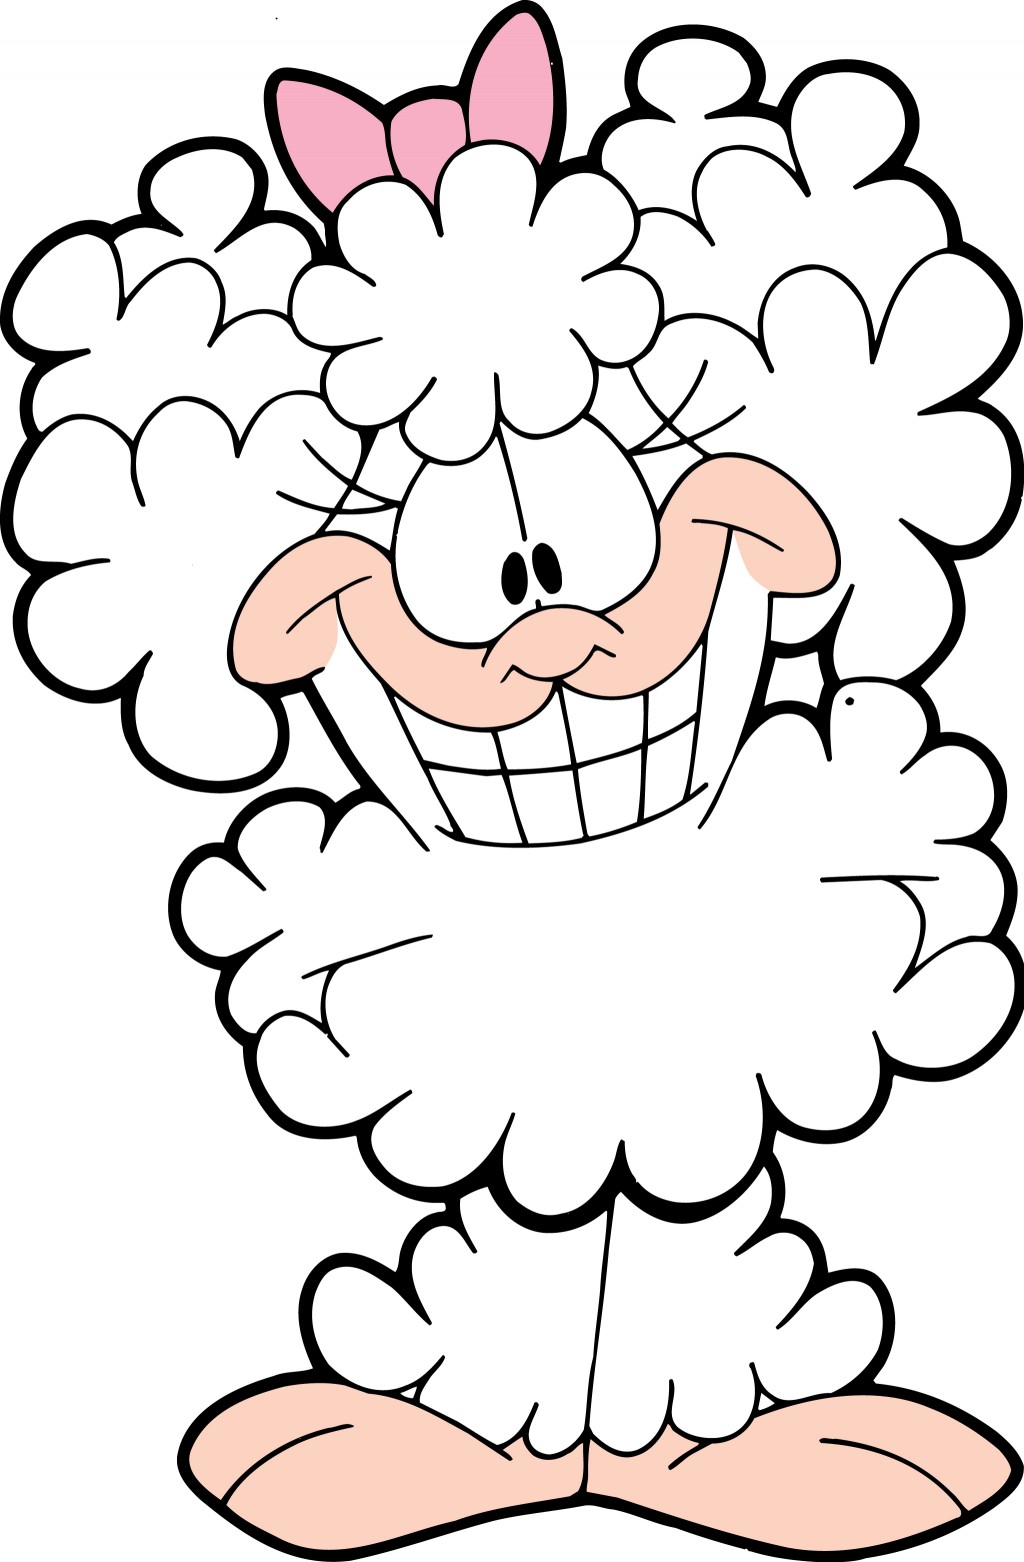 Lanolin Sheep Garfield Wiki Fandom